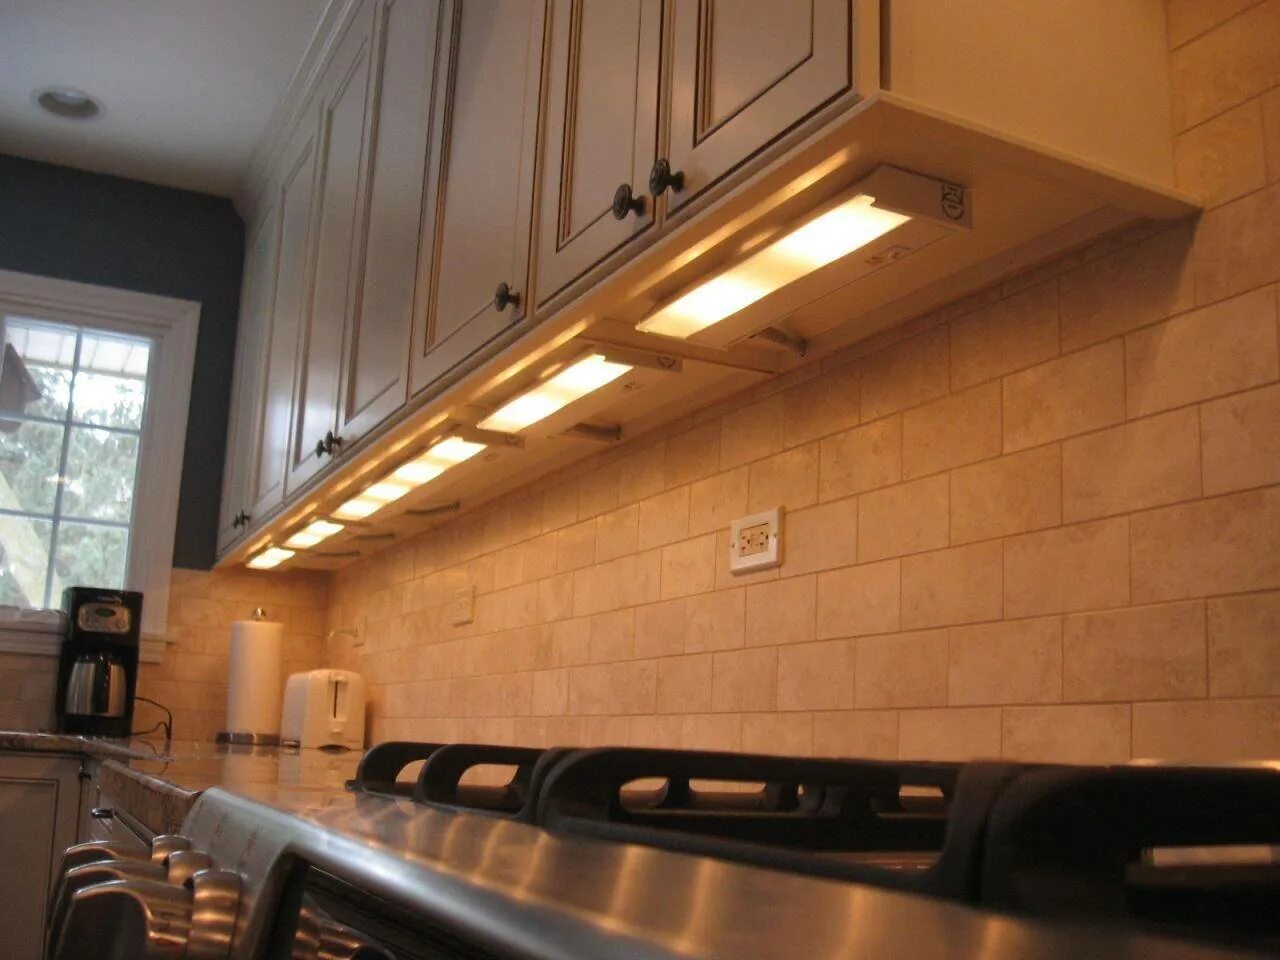 Светильник подсветка для кухни. Подсветка рабочей зоны кухни икеа. Подсветка столешницы ikea для кухни под шкафы светодиодная. Подсветка столешницы ikea. Светильники для кухни над рабочей поверхностью.